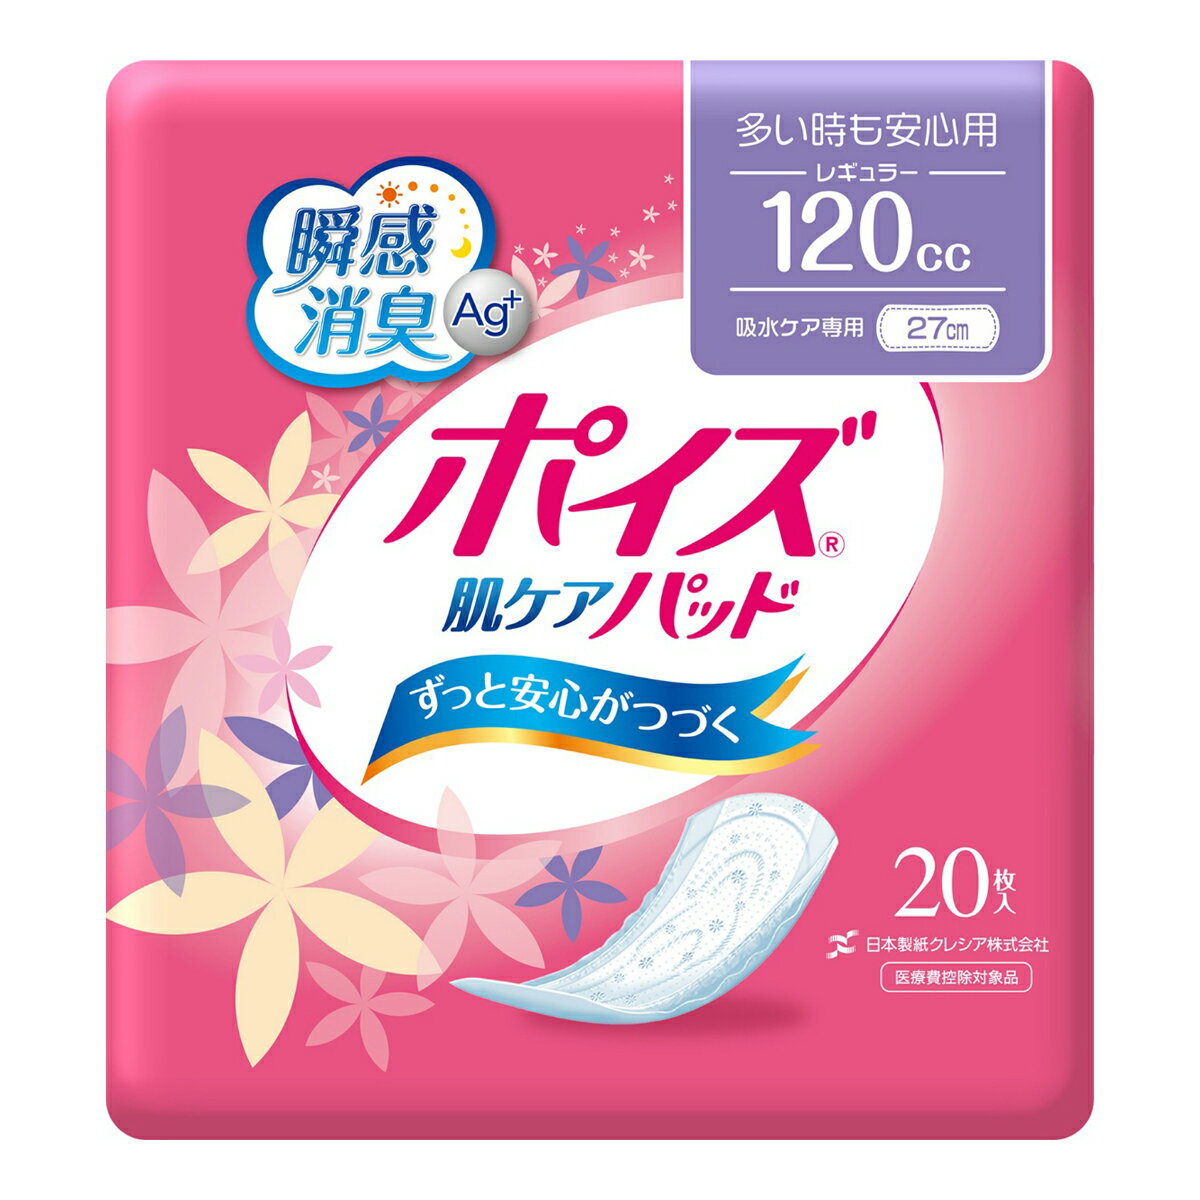 日本製紙クレシア ポイズ 肌ケアパッド 吸水ナプキン 多い時も安心用 レギュラー 120cc 20枚入